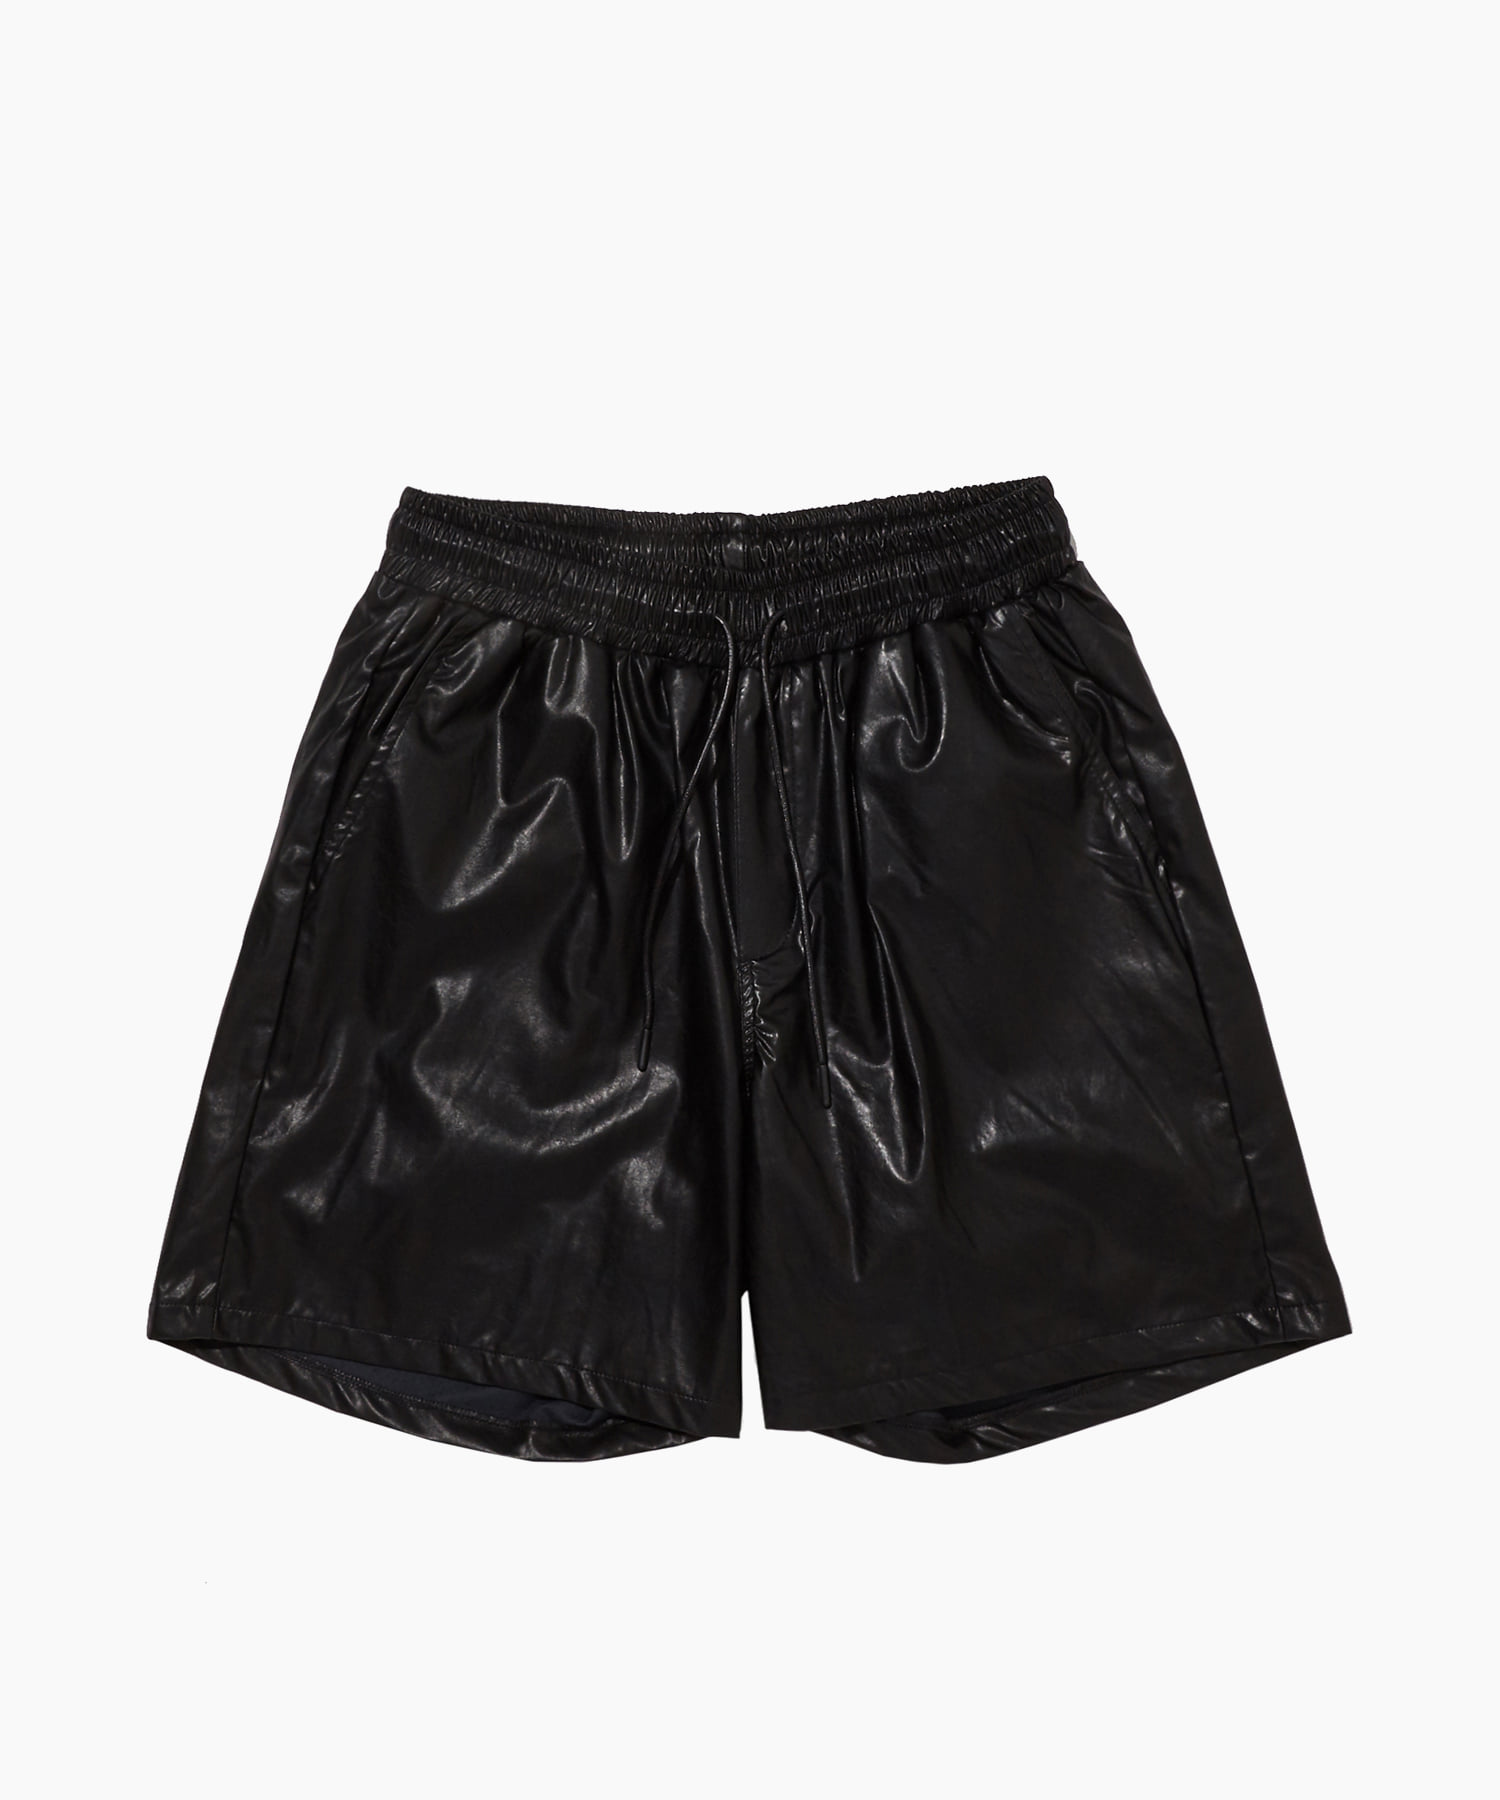 Leather banding shorts